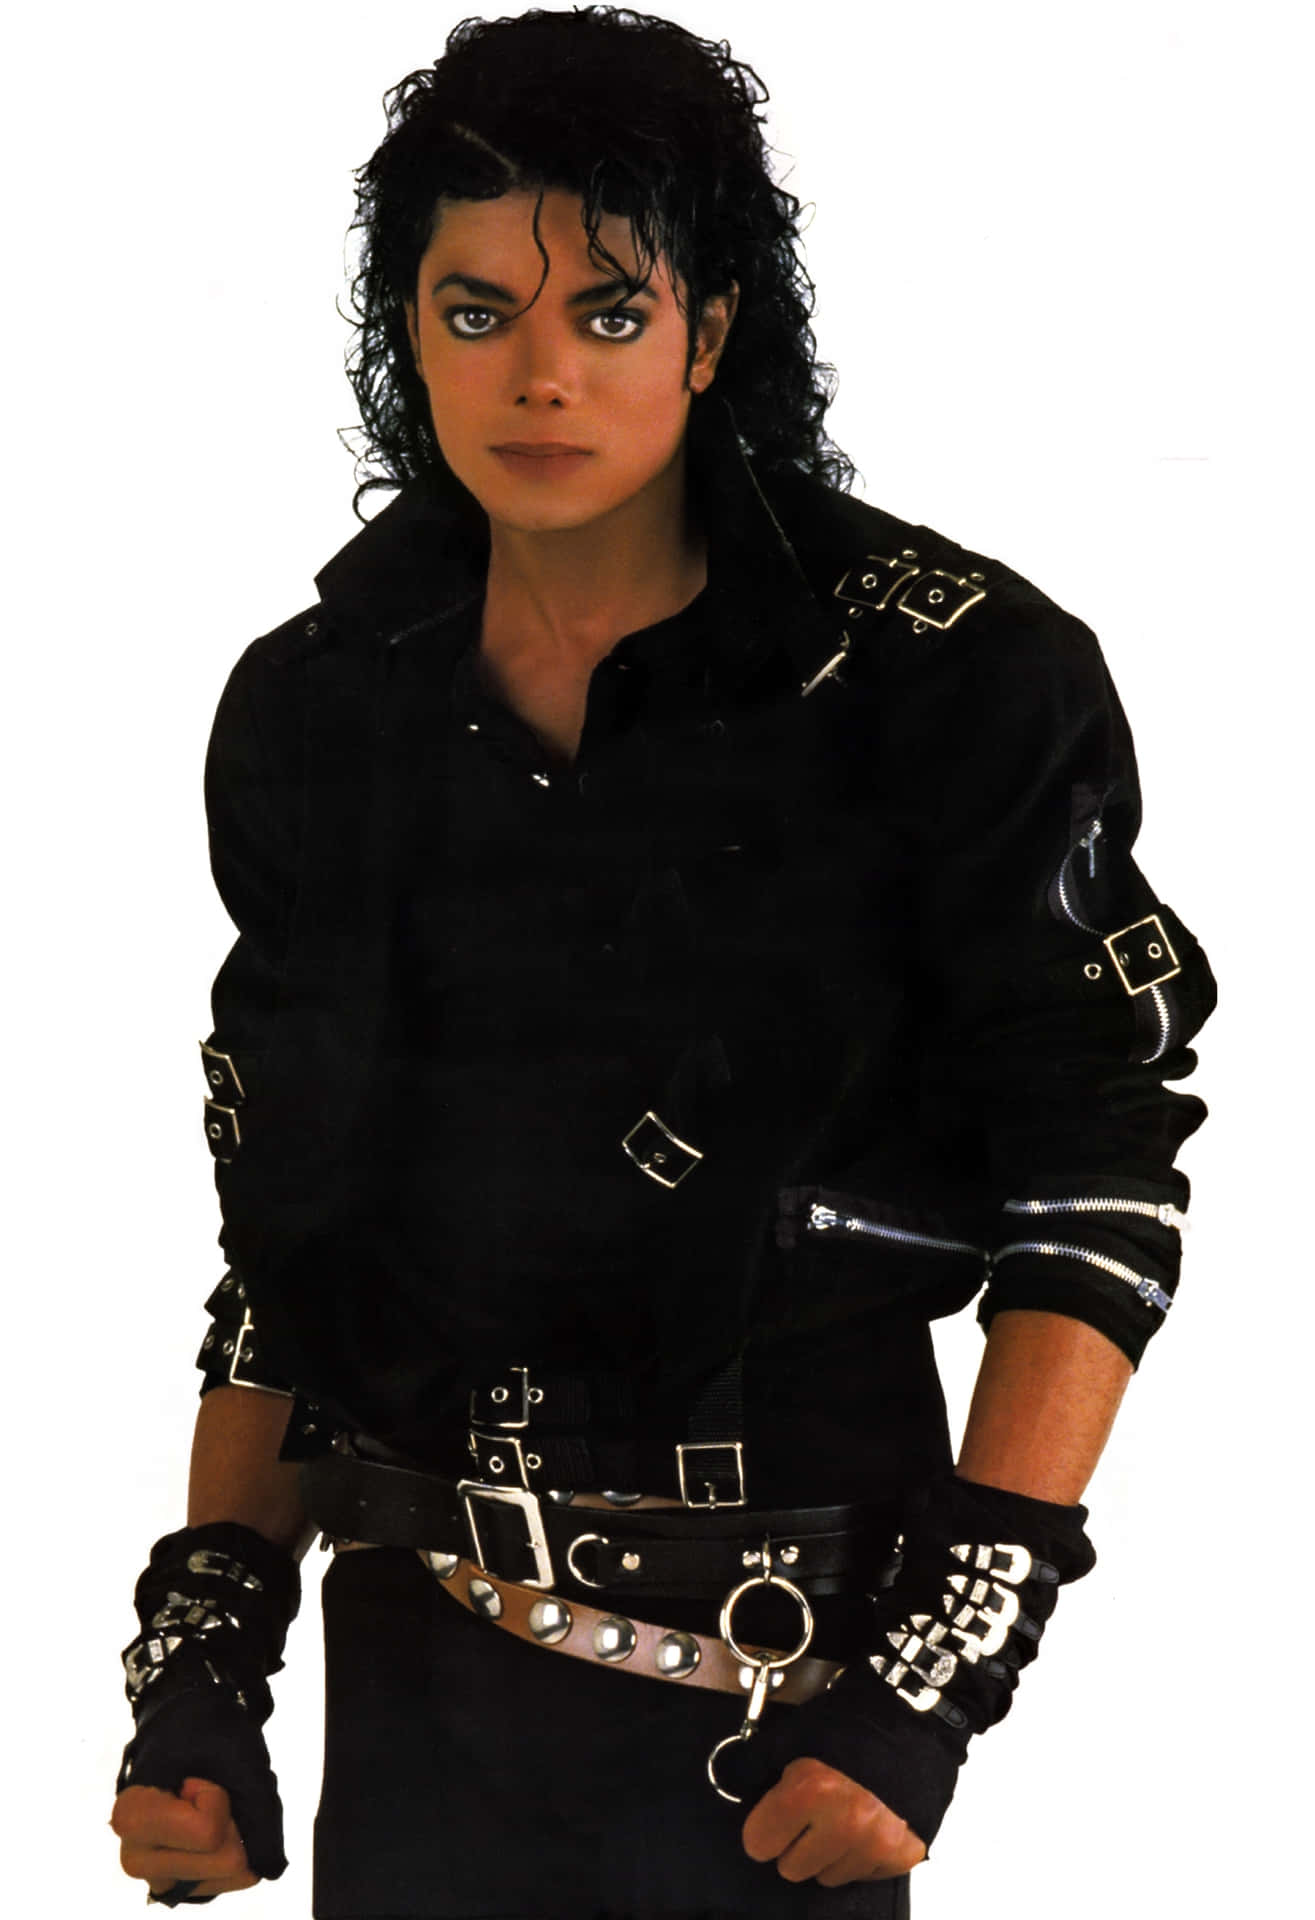 Billeder af Michael Jackson på væggene